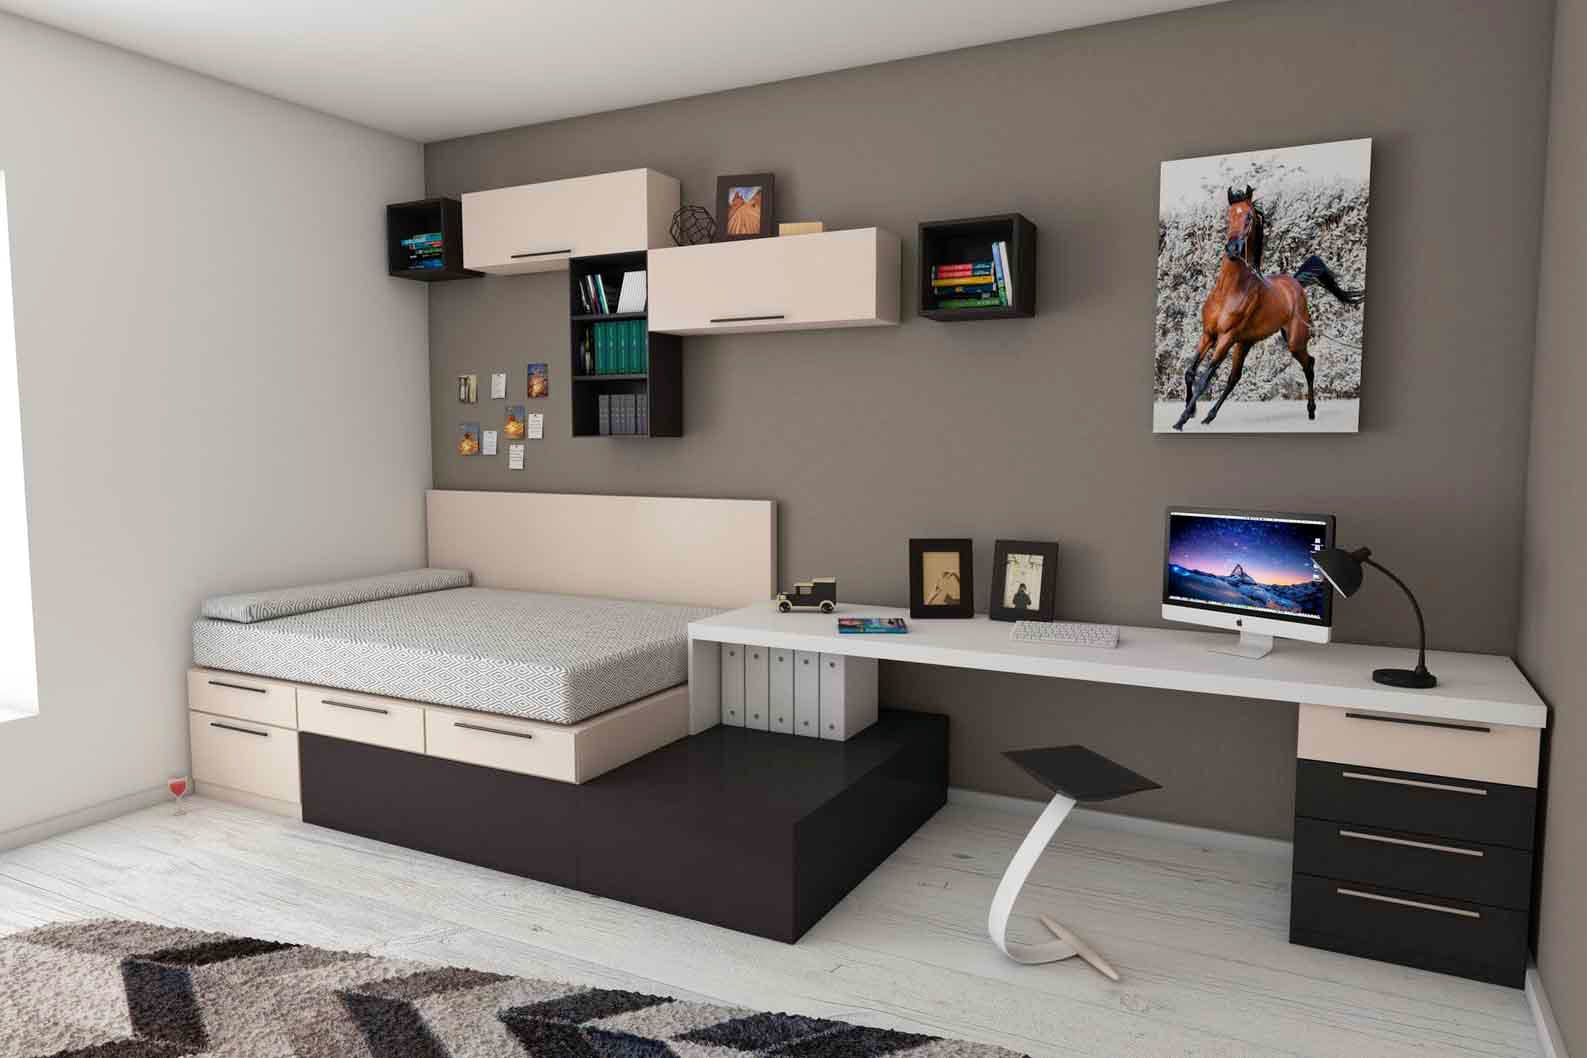 Furniture,Room,Interior design,Property,Shelf,Table,Desk,Building,Bed,Living room